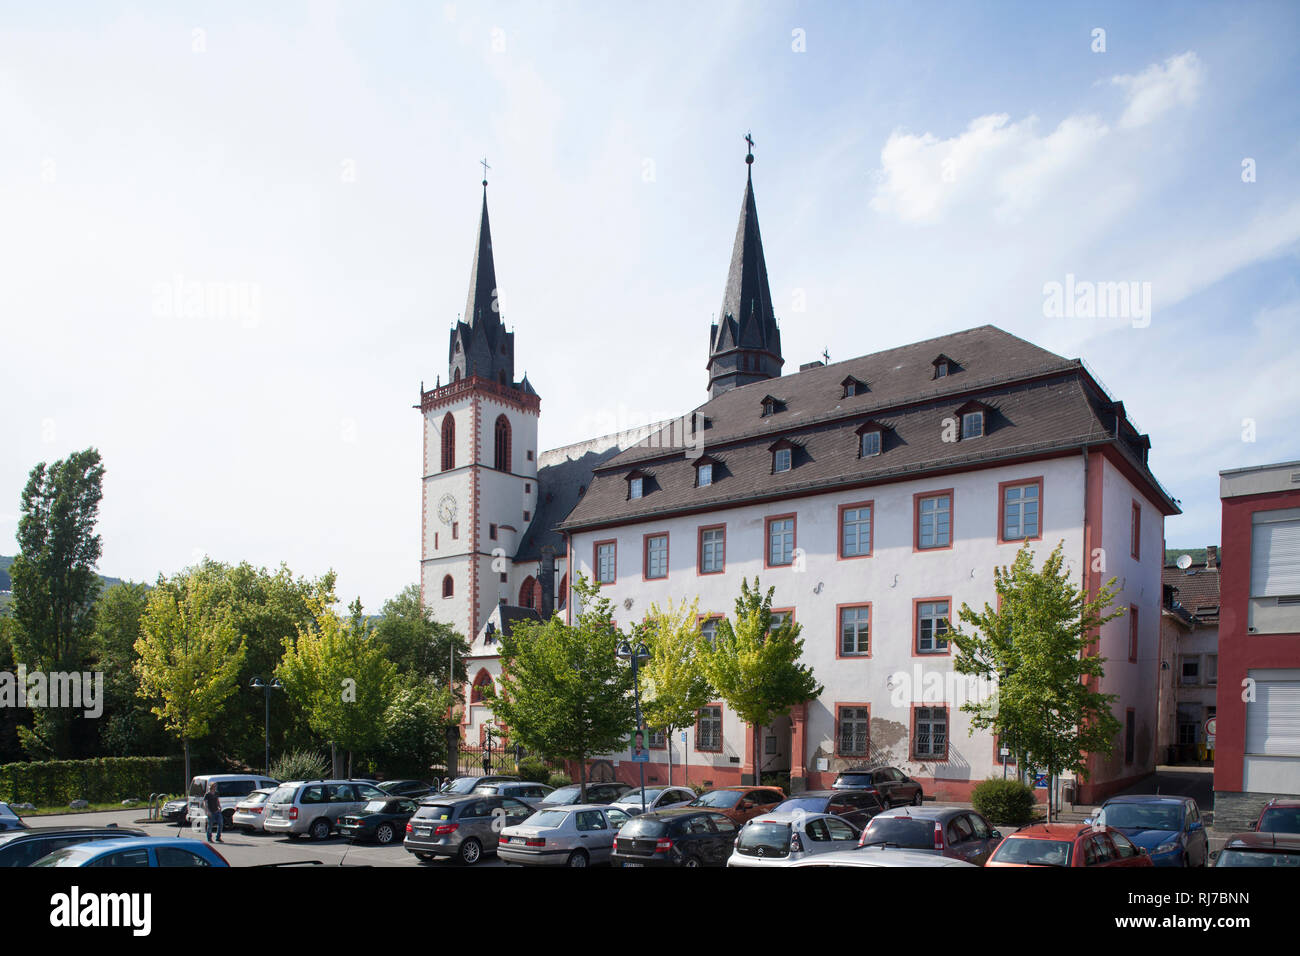 Katholische Pfarrkirche St. Martin, Bingen, Unesco Weltkulturerbe Oberes Mittelrheintal, Rheinland-Pfalz, Deutschland, Stock Photo